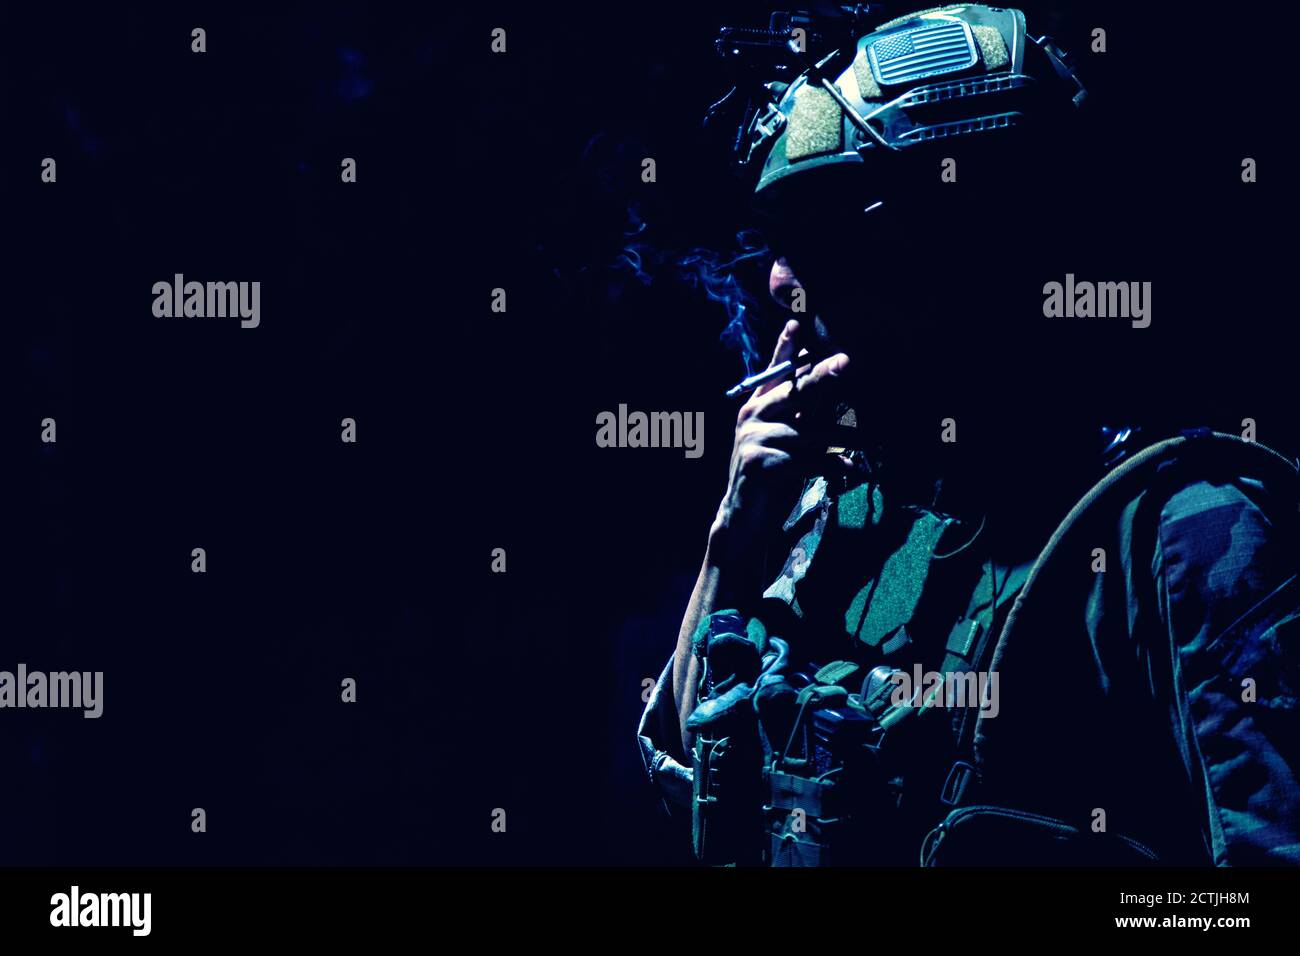 Armee Soldat in Kampfuniform und Helm, Rauchen Zigarette in der Dunkelheit. Special Operations Forces Kämpfer, ruhende Infantryman Silhouette mit Zigarette im Mund und Tabakrauch, Low-Key Stockfoto